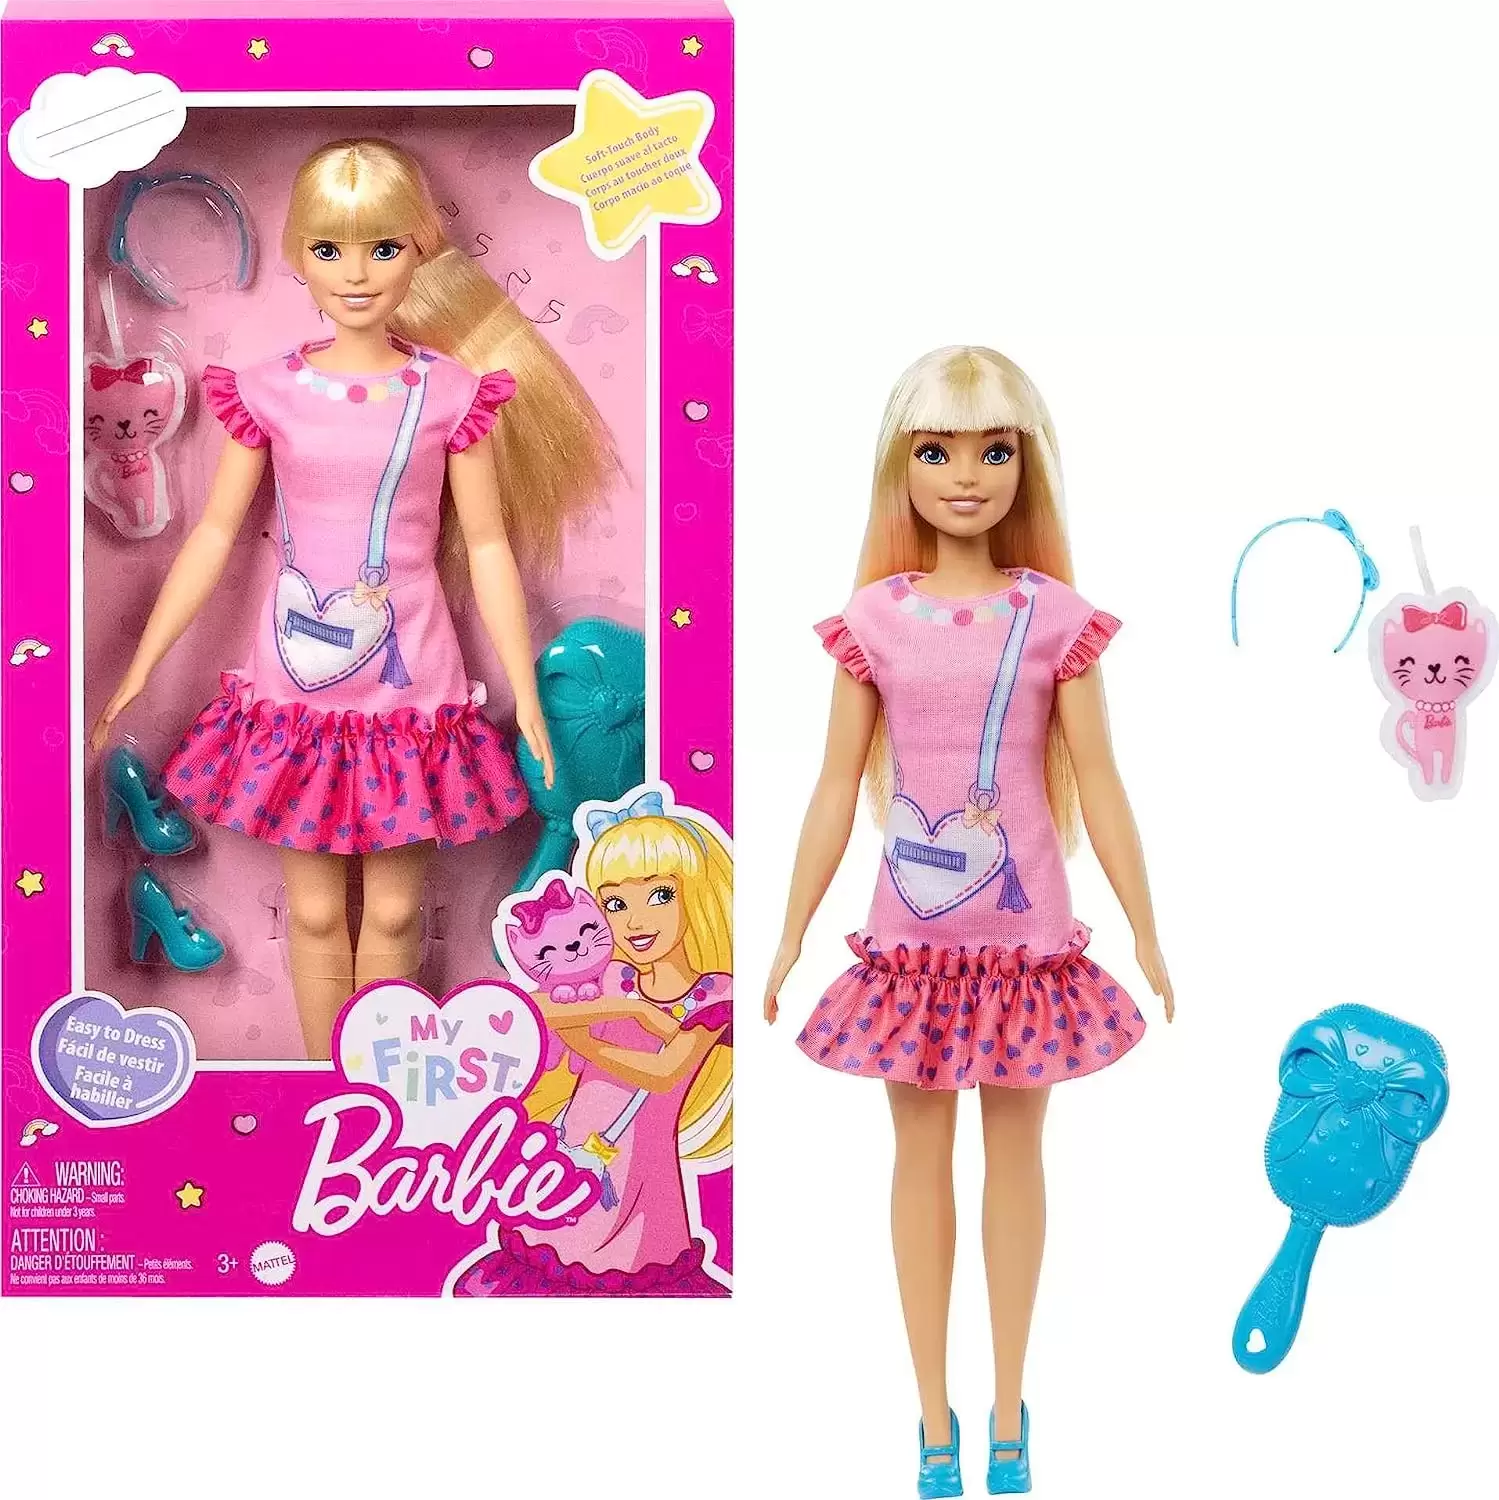 Barbie - O que devo vestir?